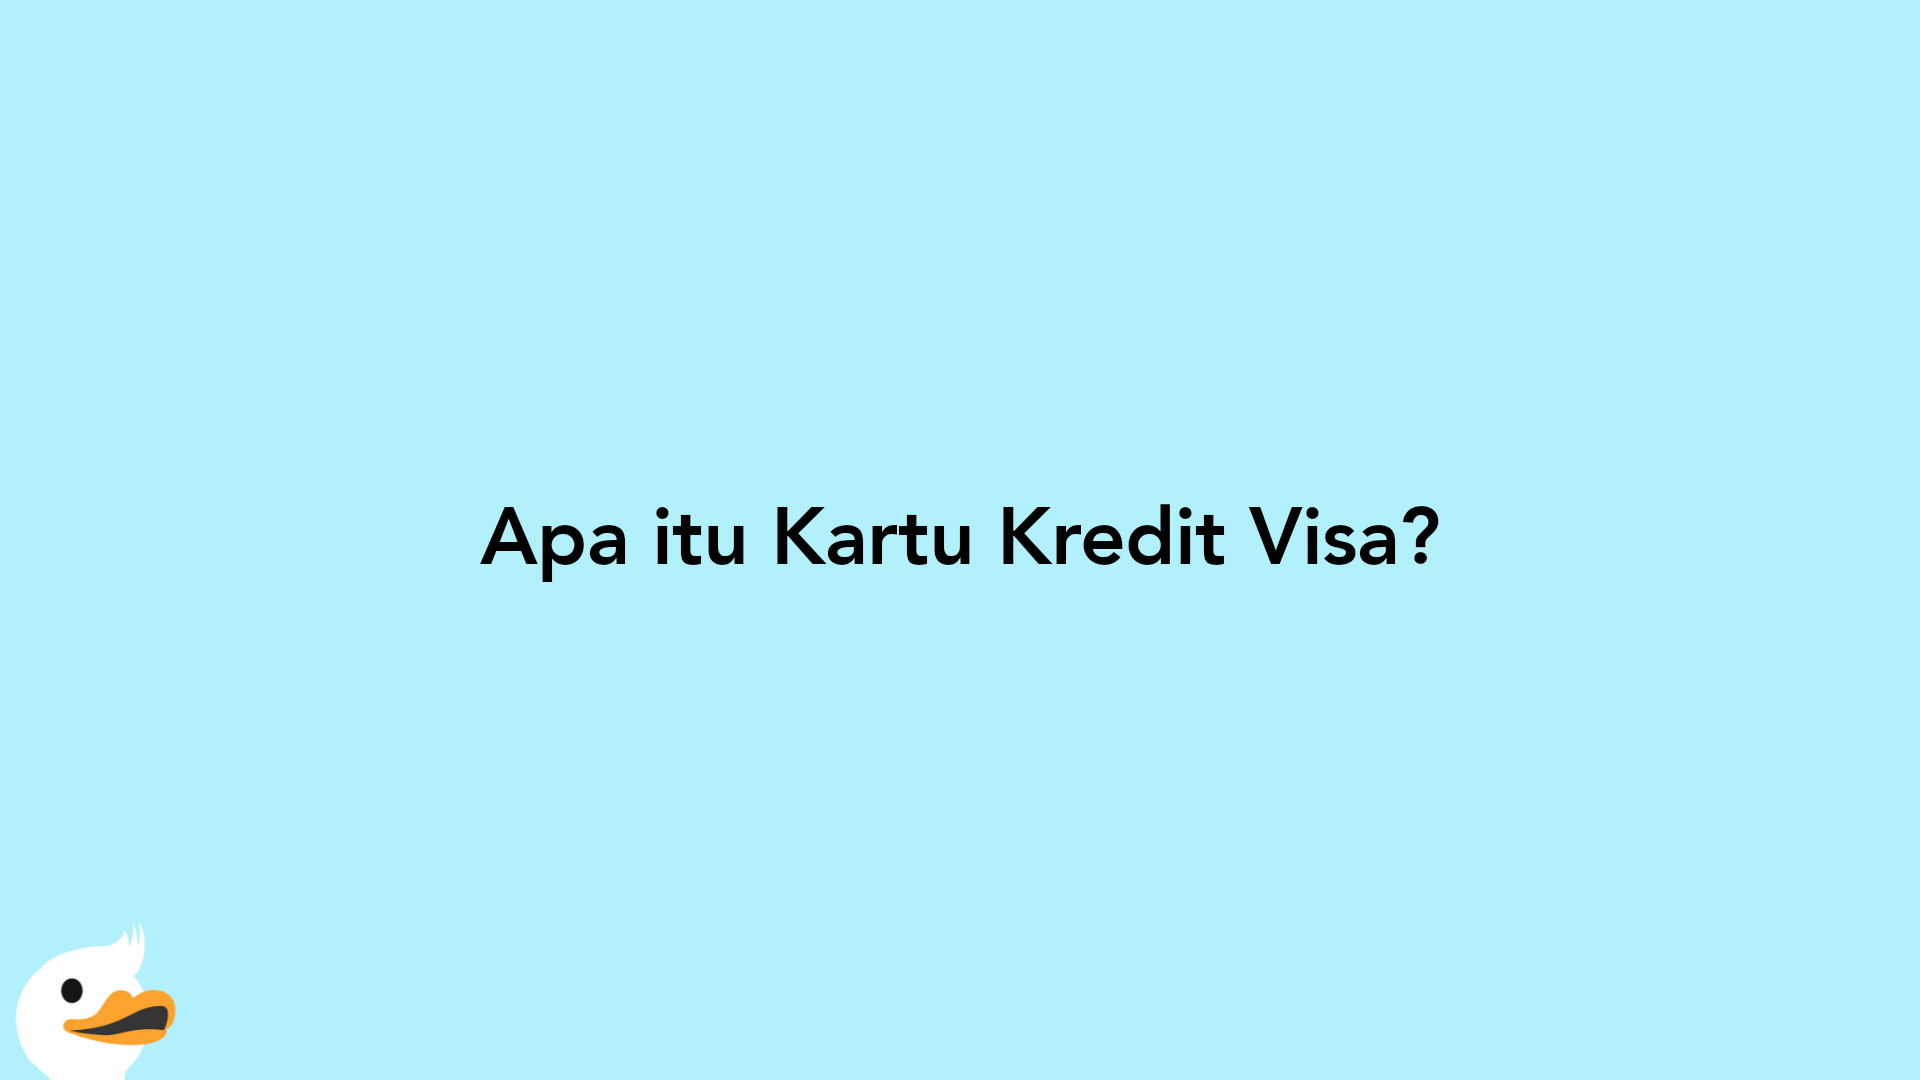 Apa itu Kartu Kredit Visa?